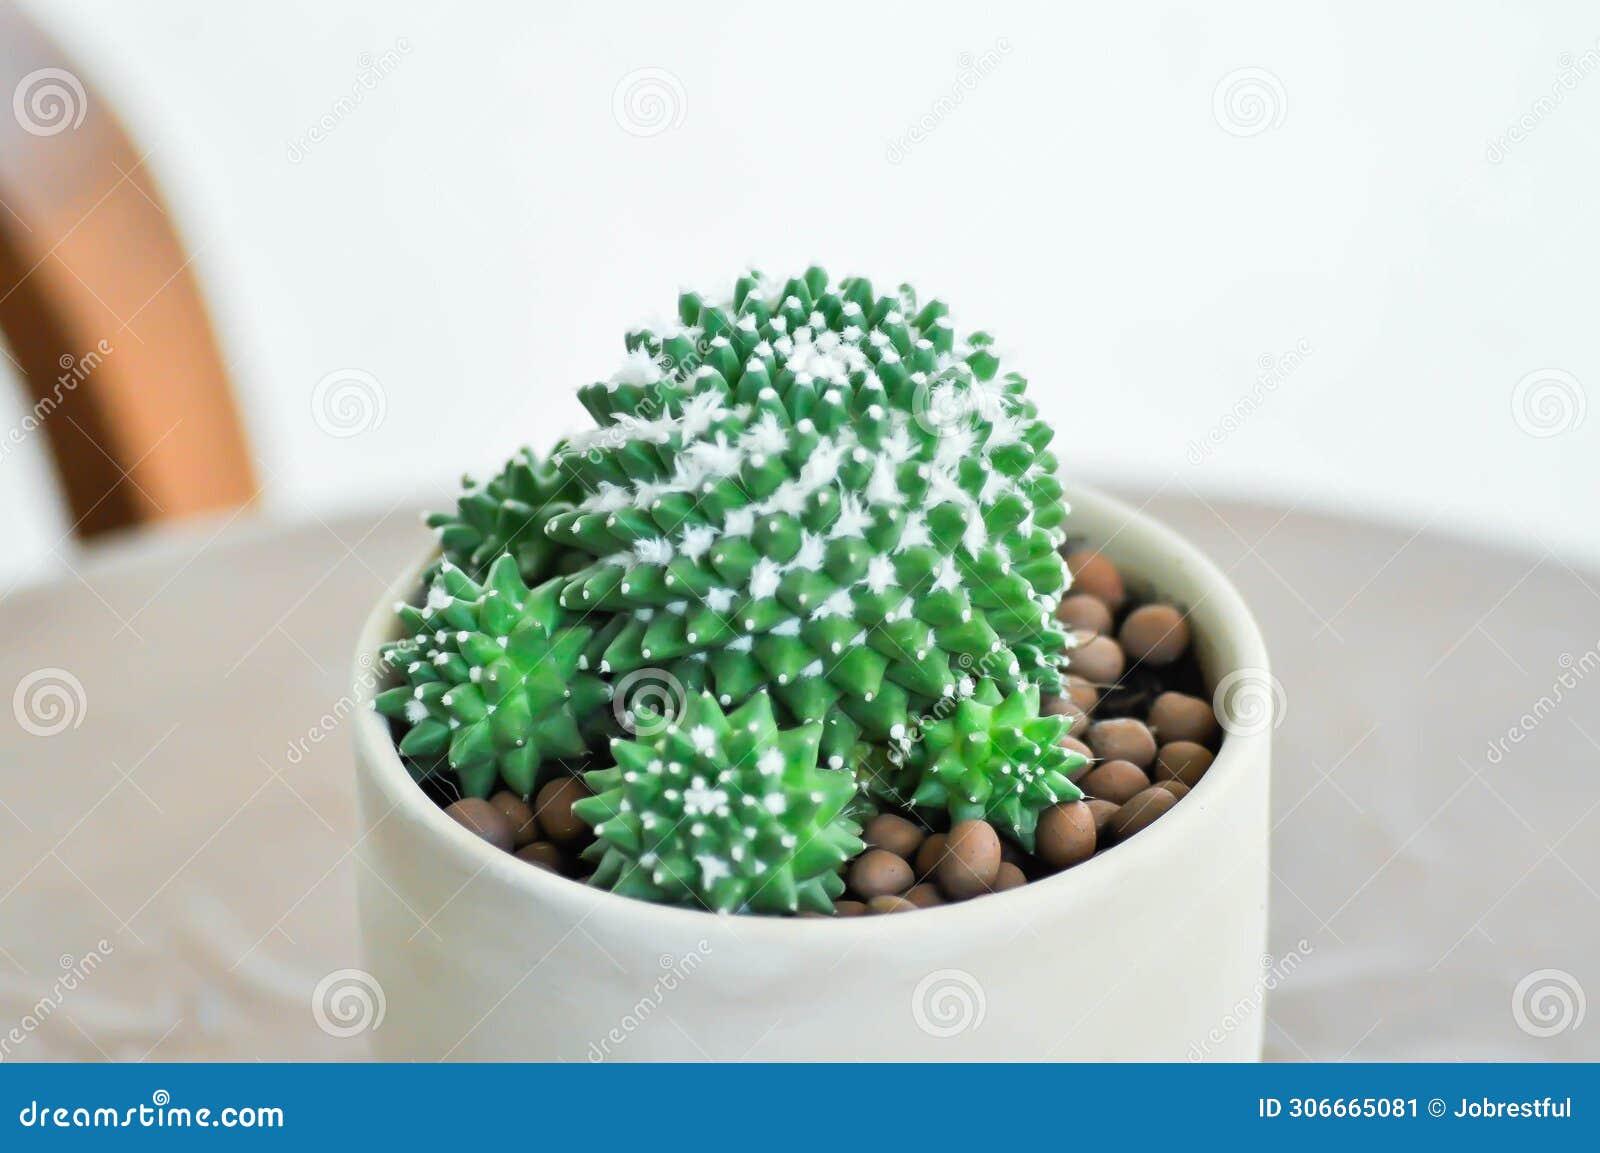 mammillaria or mammillaria erusamu f or rebutia minuscula, cactus or succulent